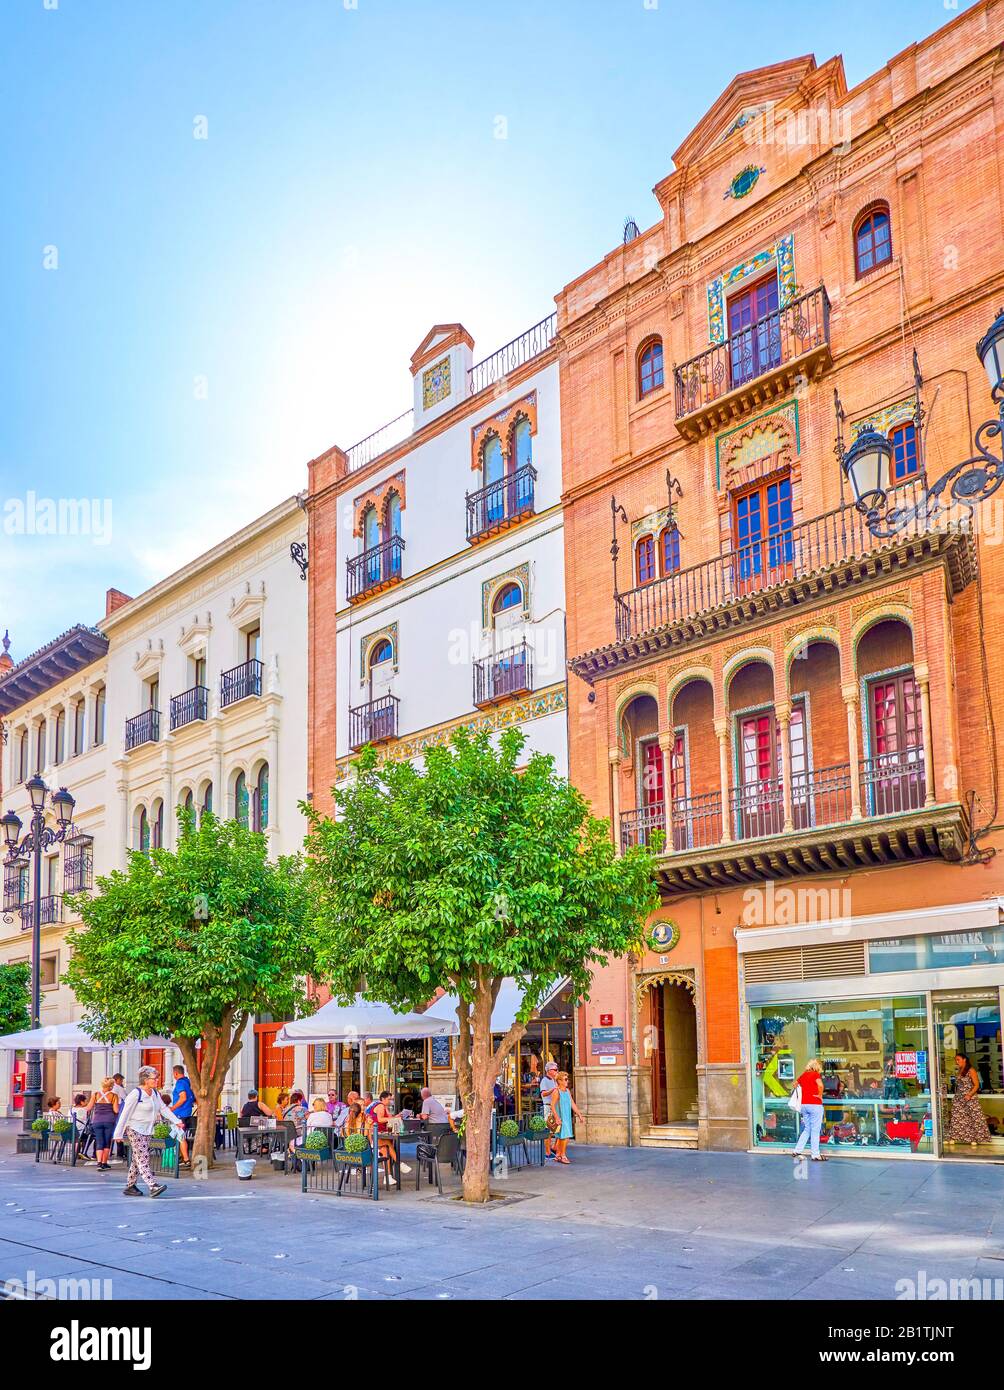 Siviglia, SPAGNA - 1 OTTOBRE 2019: Avenida de la Constitucion è la via principale della città vecchia con molti caffè e ristoranti turistici Foto Stock